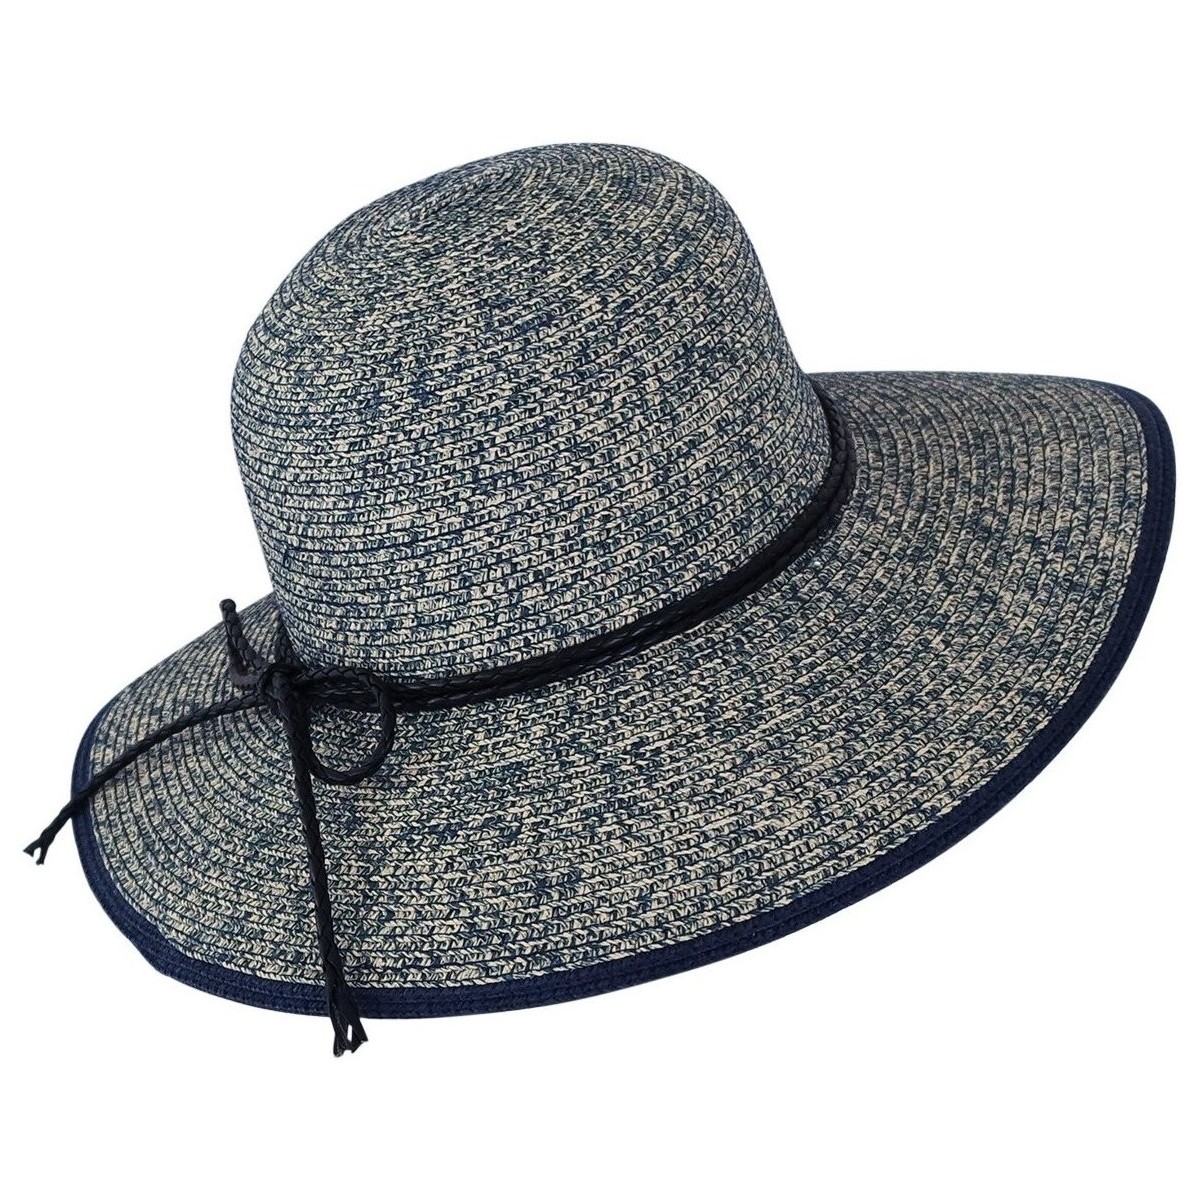 Accessoires textile Femme Chapeaux Chapeau-Tendance Chapeau cloche chiné BLANDICE Bleu